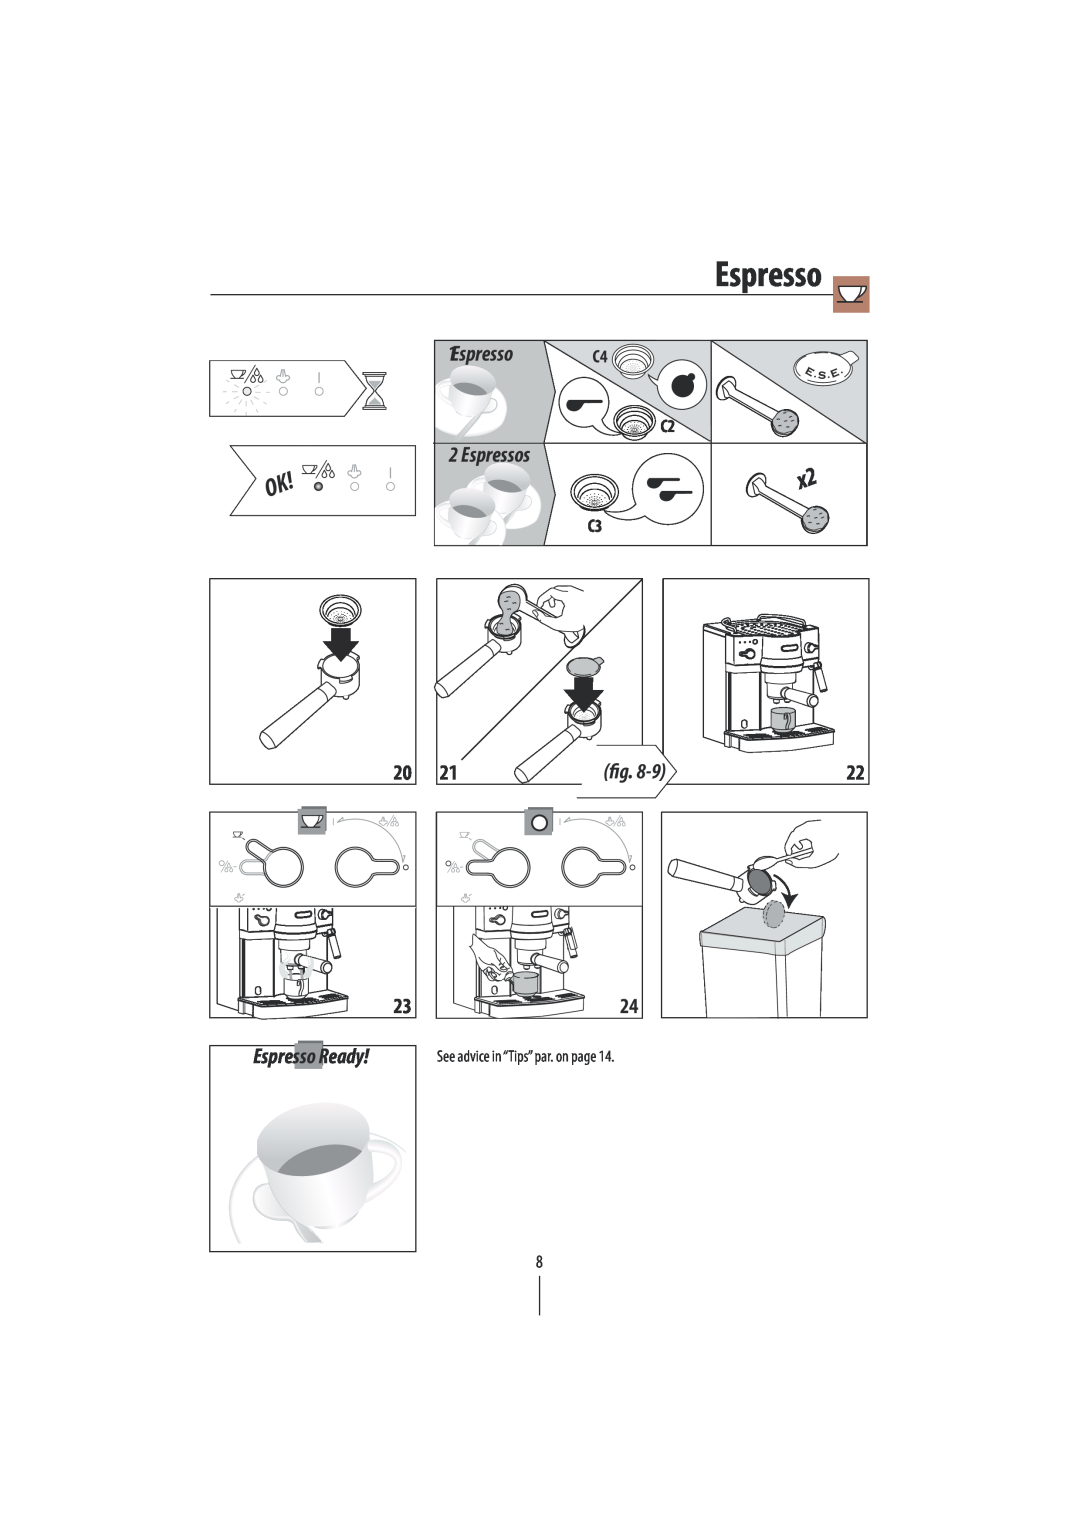 DeLonghi EC820 manual 1Espresso, Espressos, Ready, See advice in “Tips”par. on page 